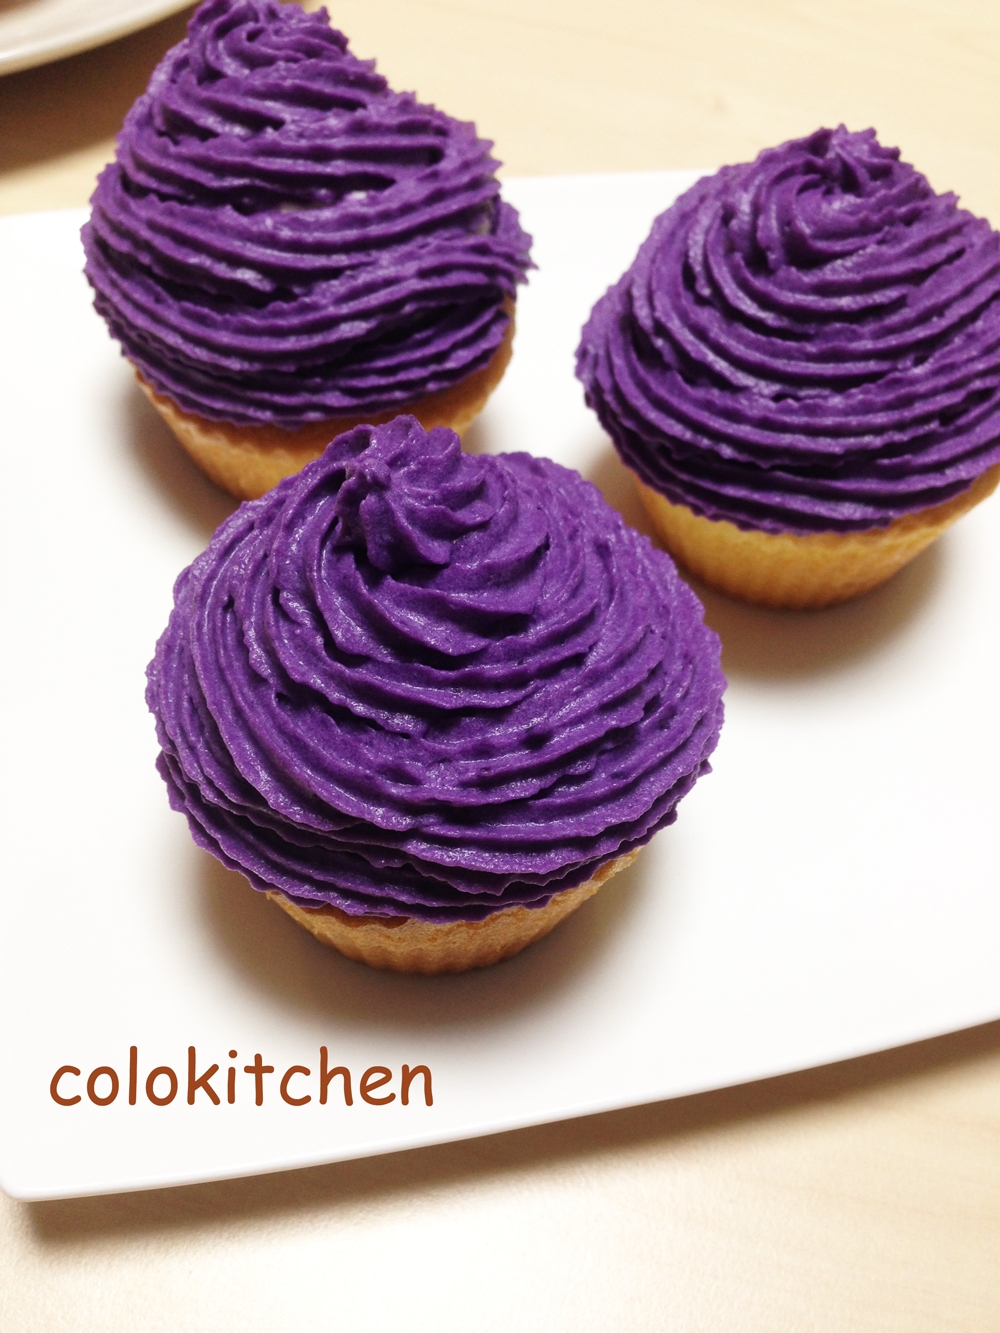 絶品 紫いもクリームのカップケーキ レシピ 作り方 By Colokitchen 楽天レシピ